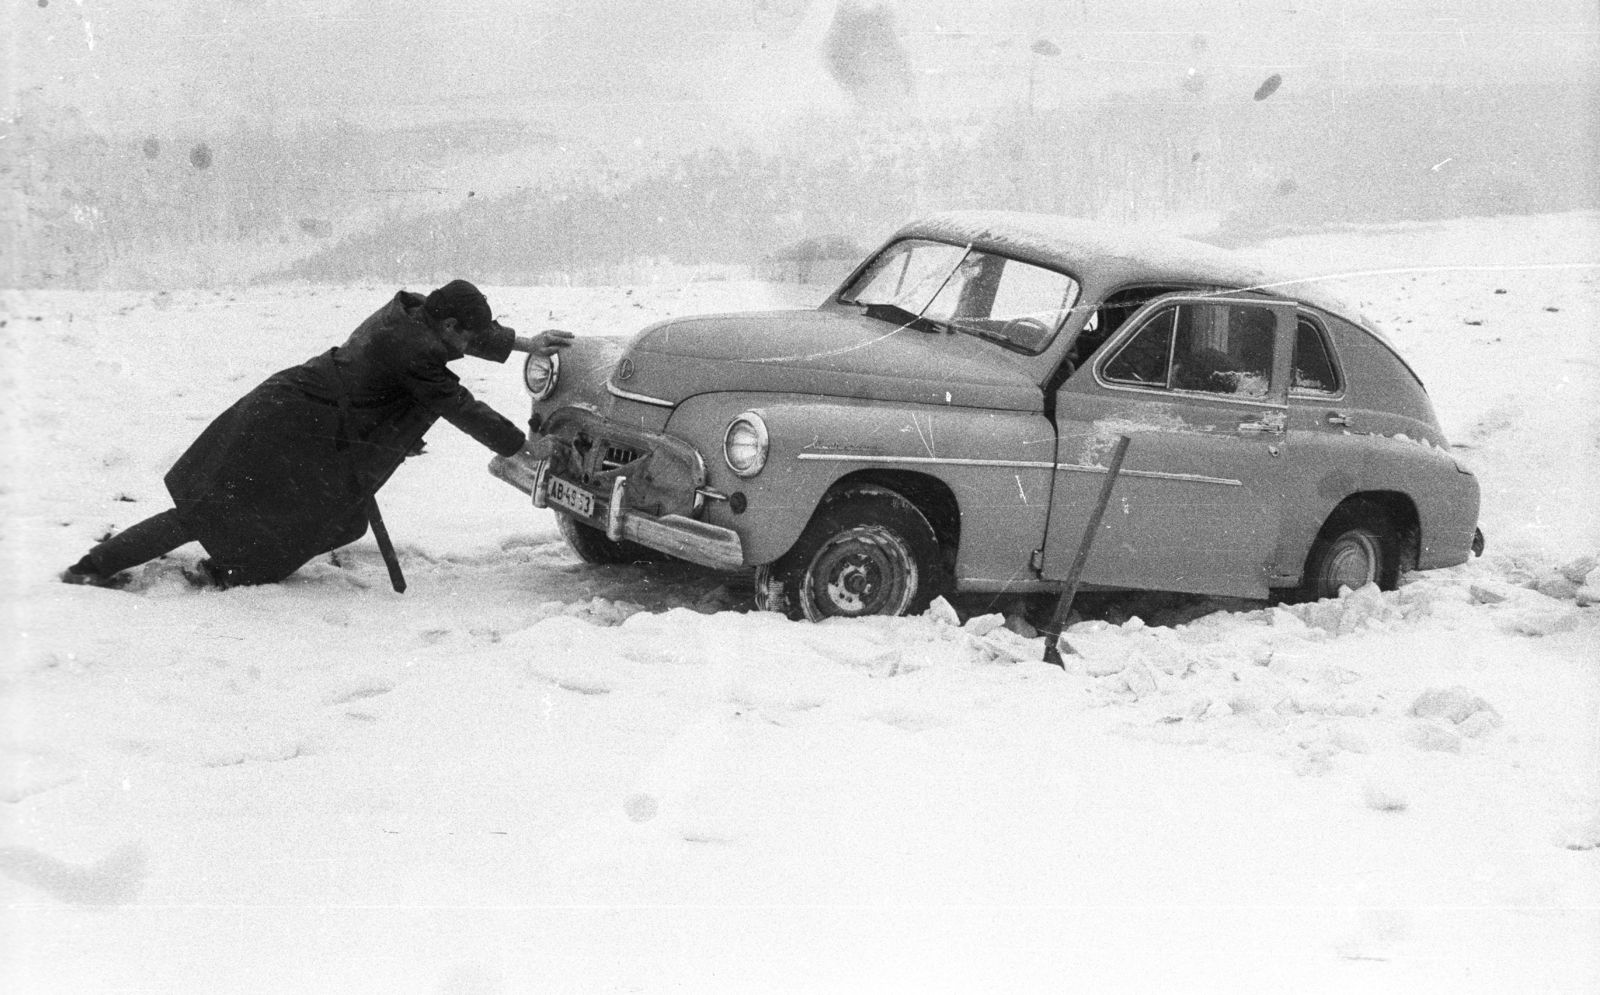 Magyarország, Bükkaranyos, Warszawa M 20 típusú személygépkocsi kiásása a hóból., 1963, Mészáros Zoltán, hó, automobil, Fortepan #46425